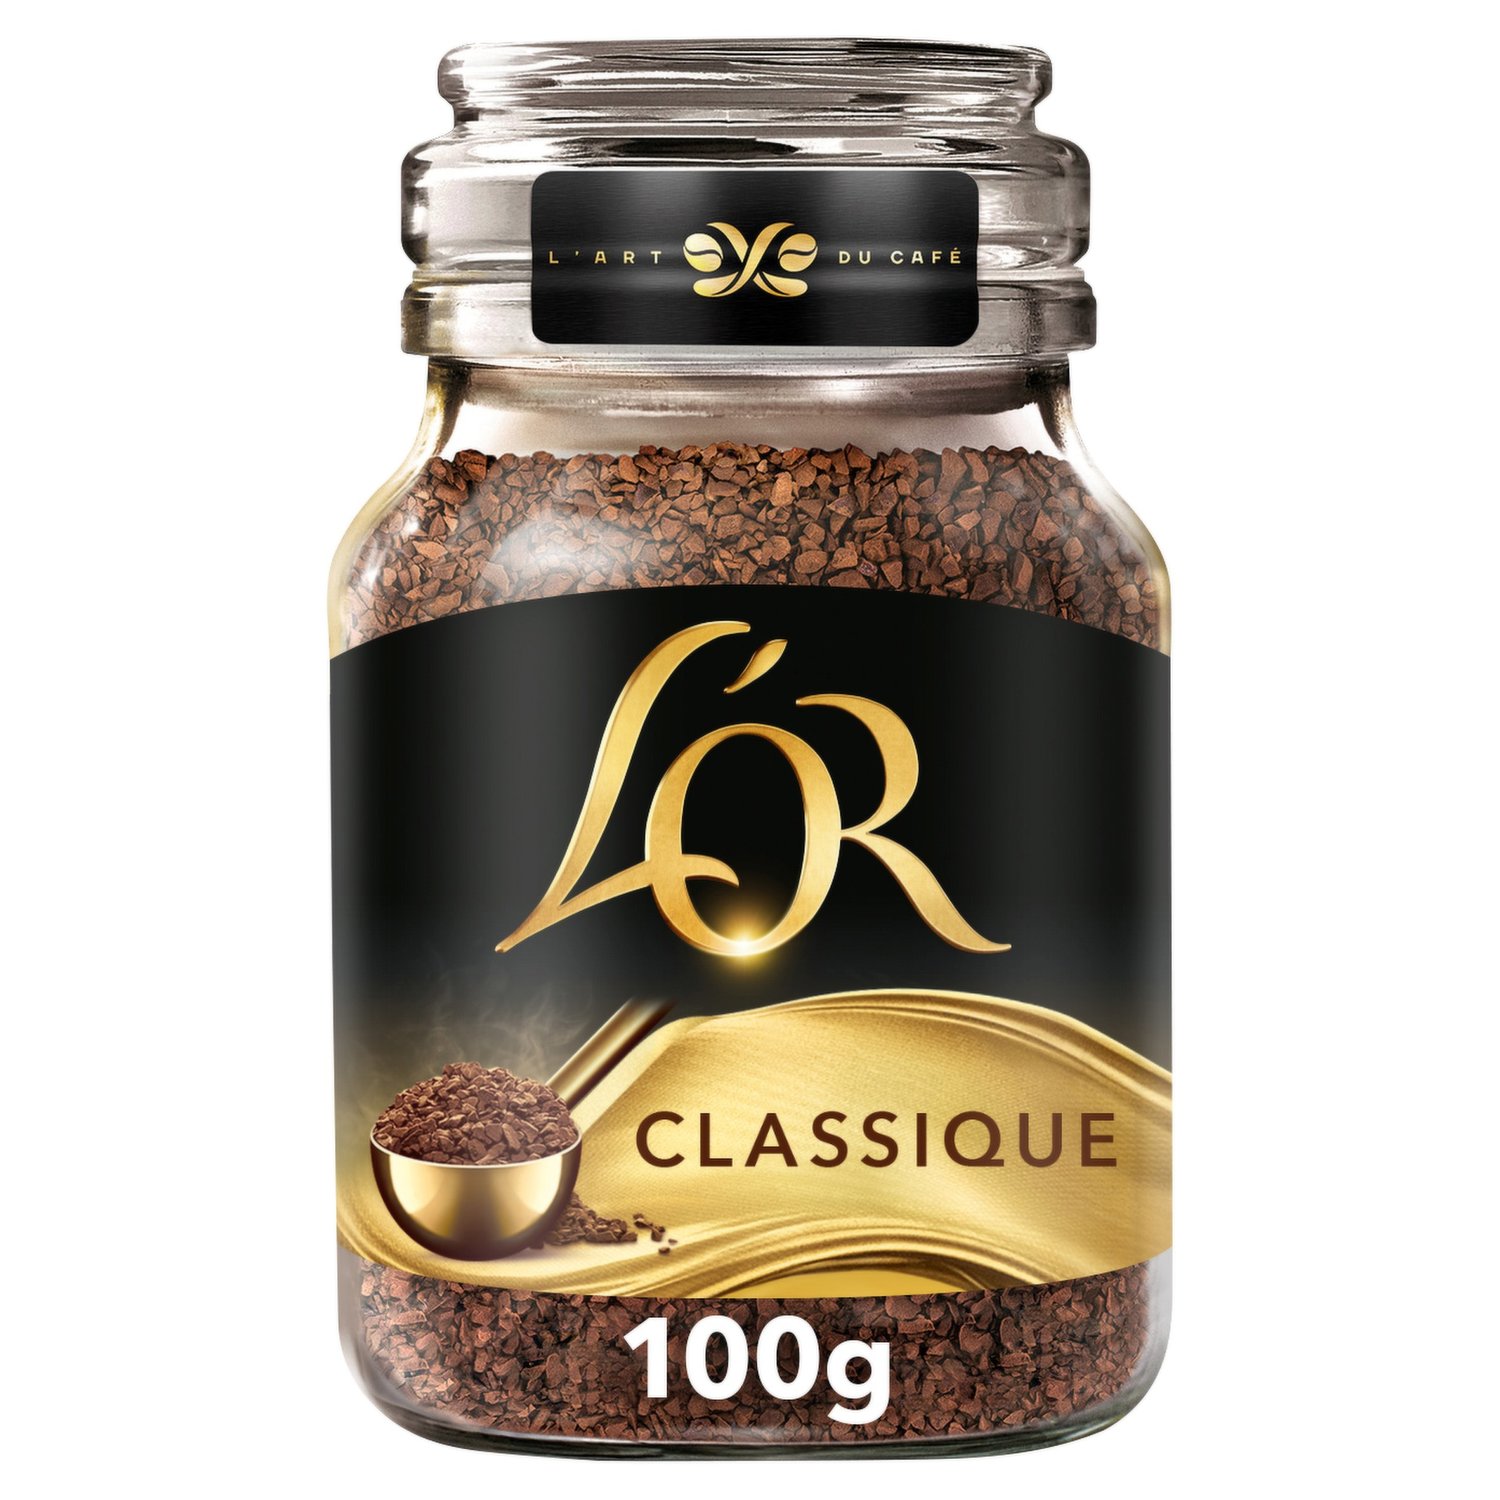 L'OR Espresso Classique - 16 Cápsulas para Tassimo por 4,19 €